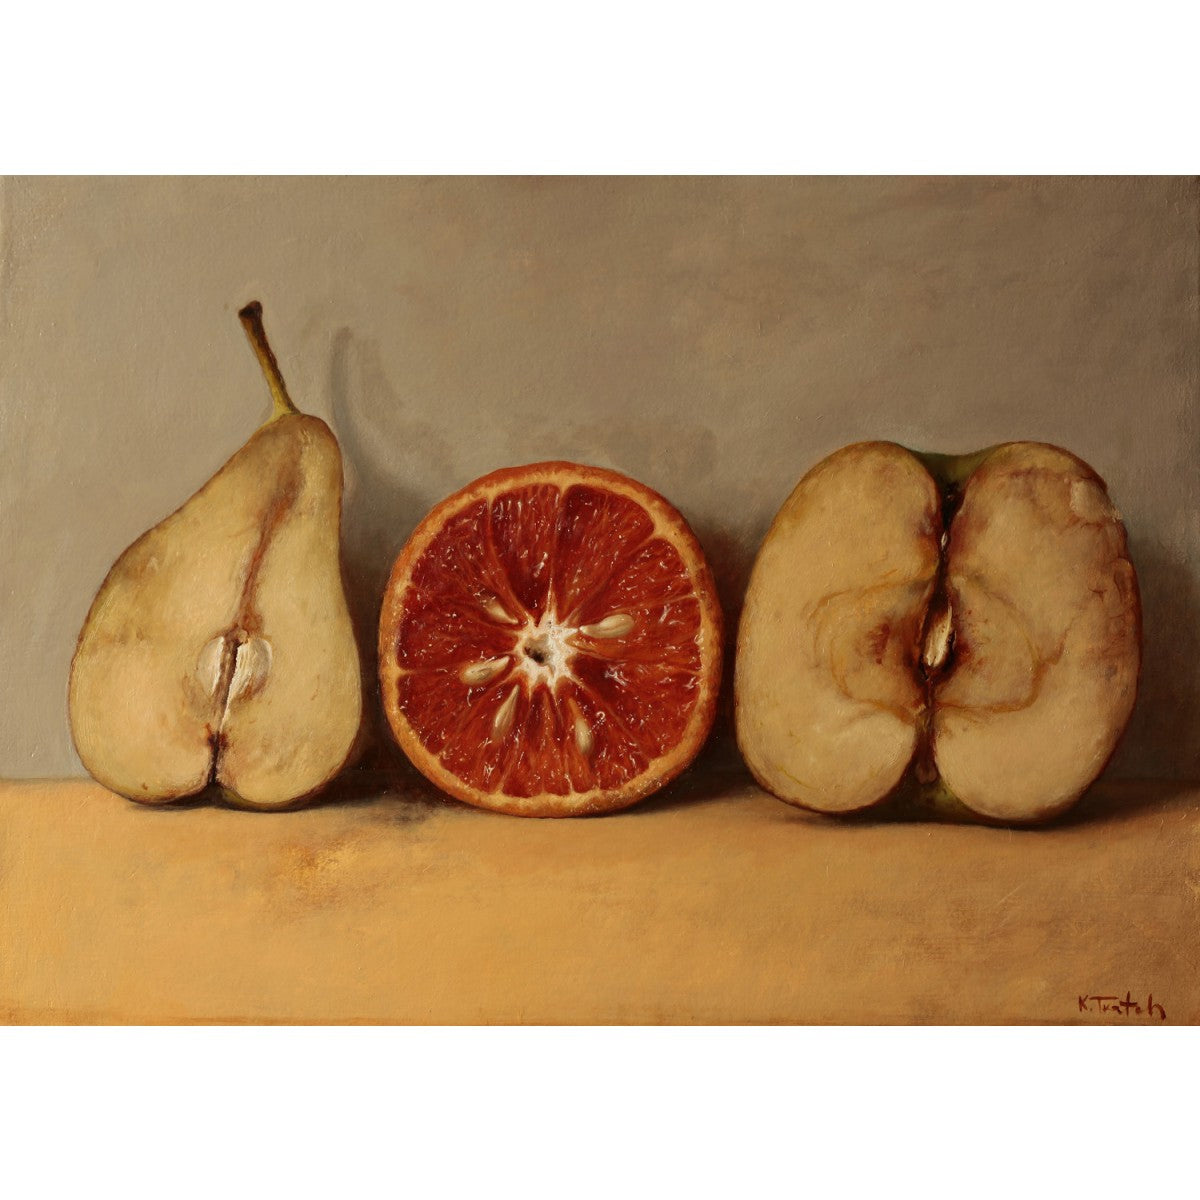 Pear Orange and Apple by Kim Tkatch